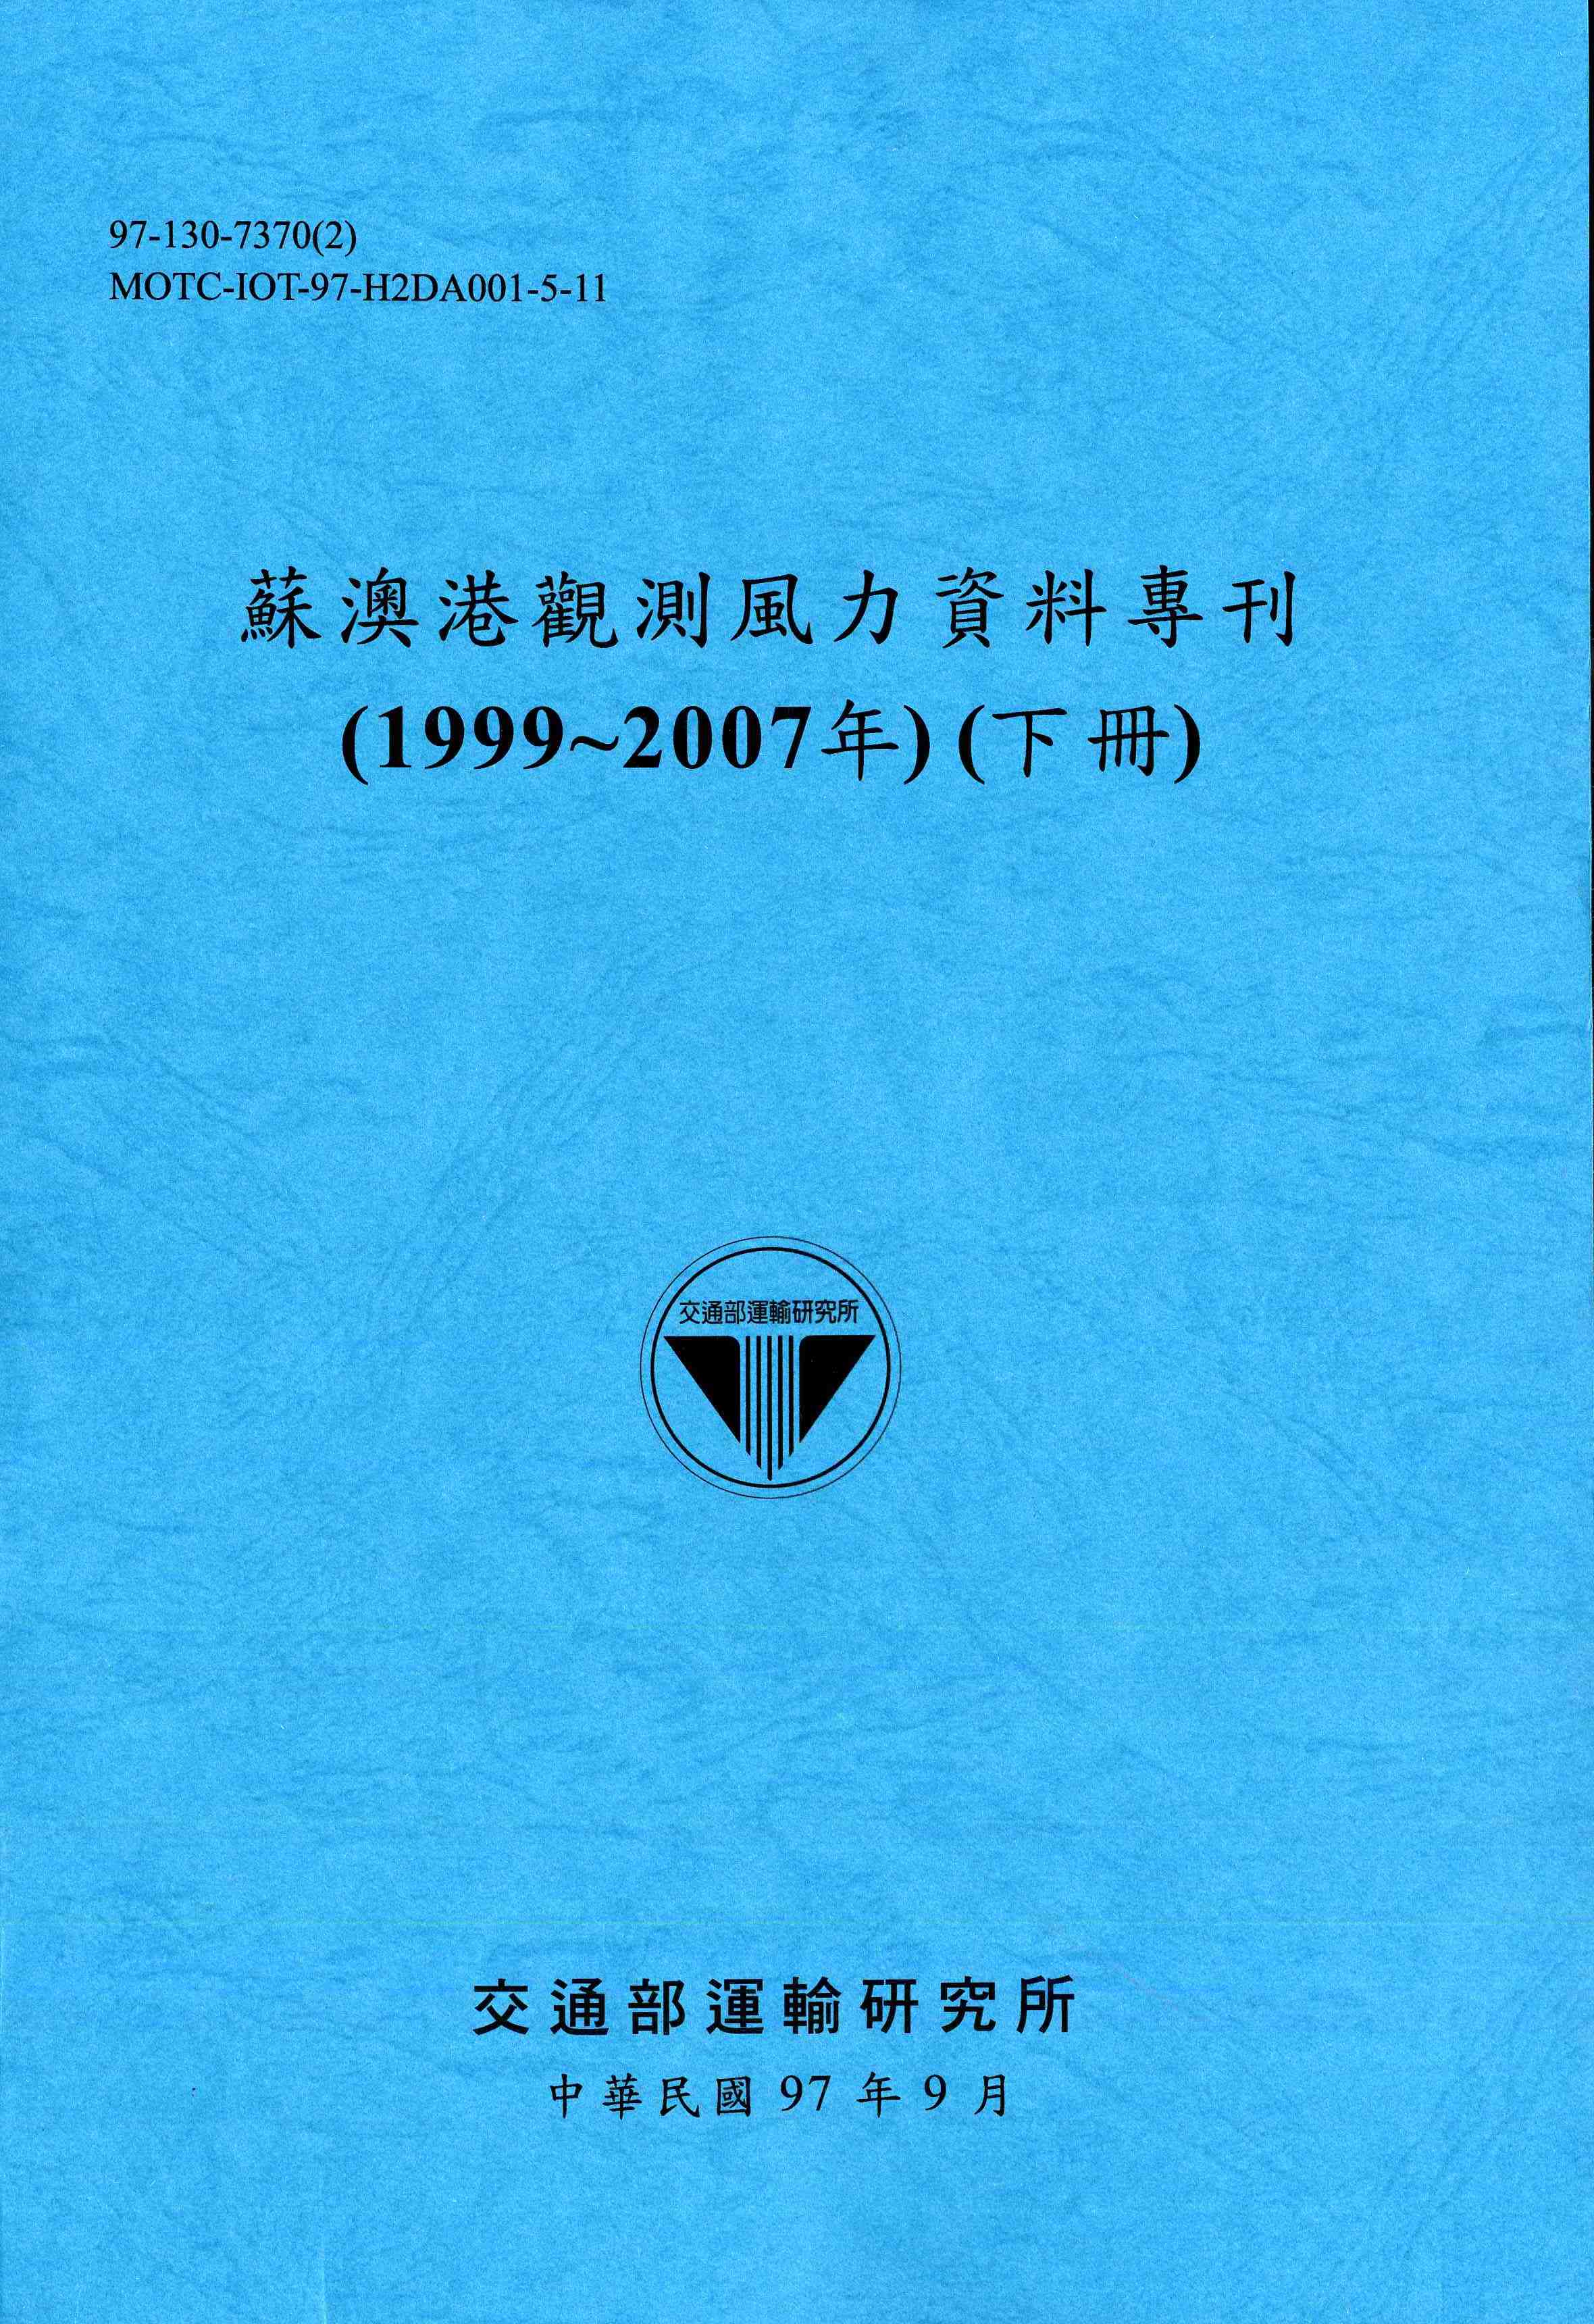 蘇澳港觀測風力資料專刊(1999~2007年)(下冊)